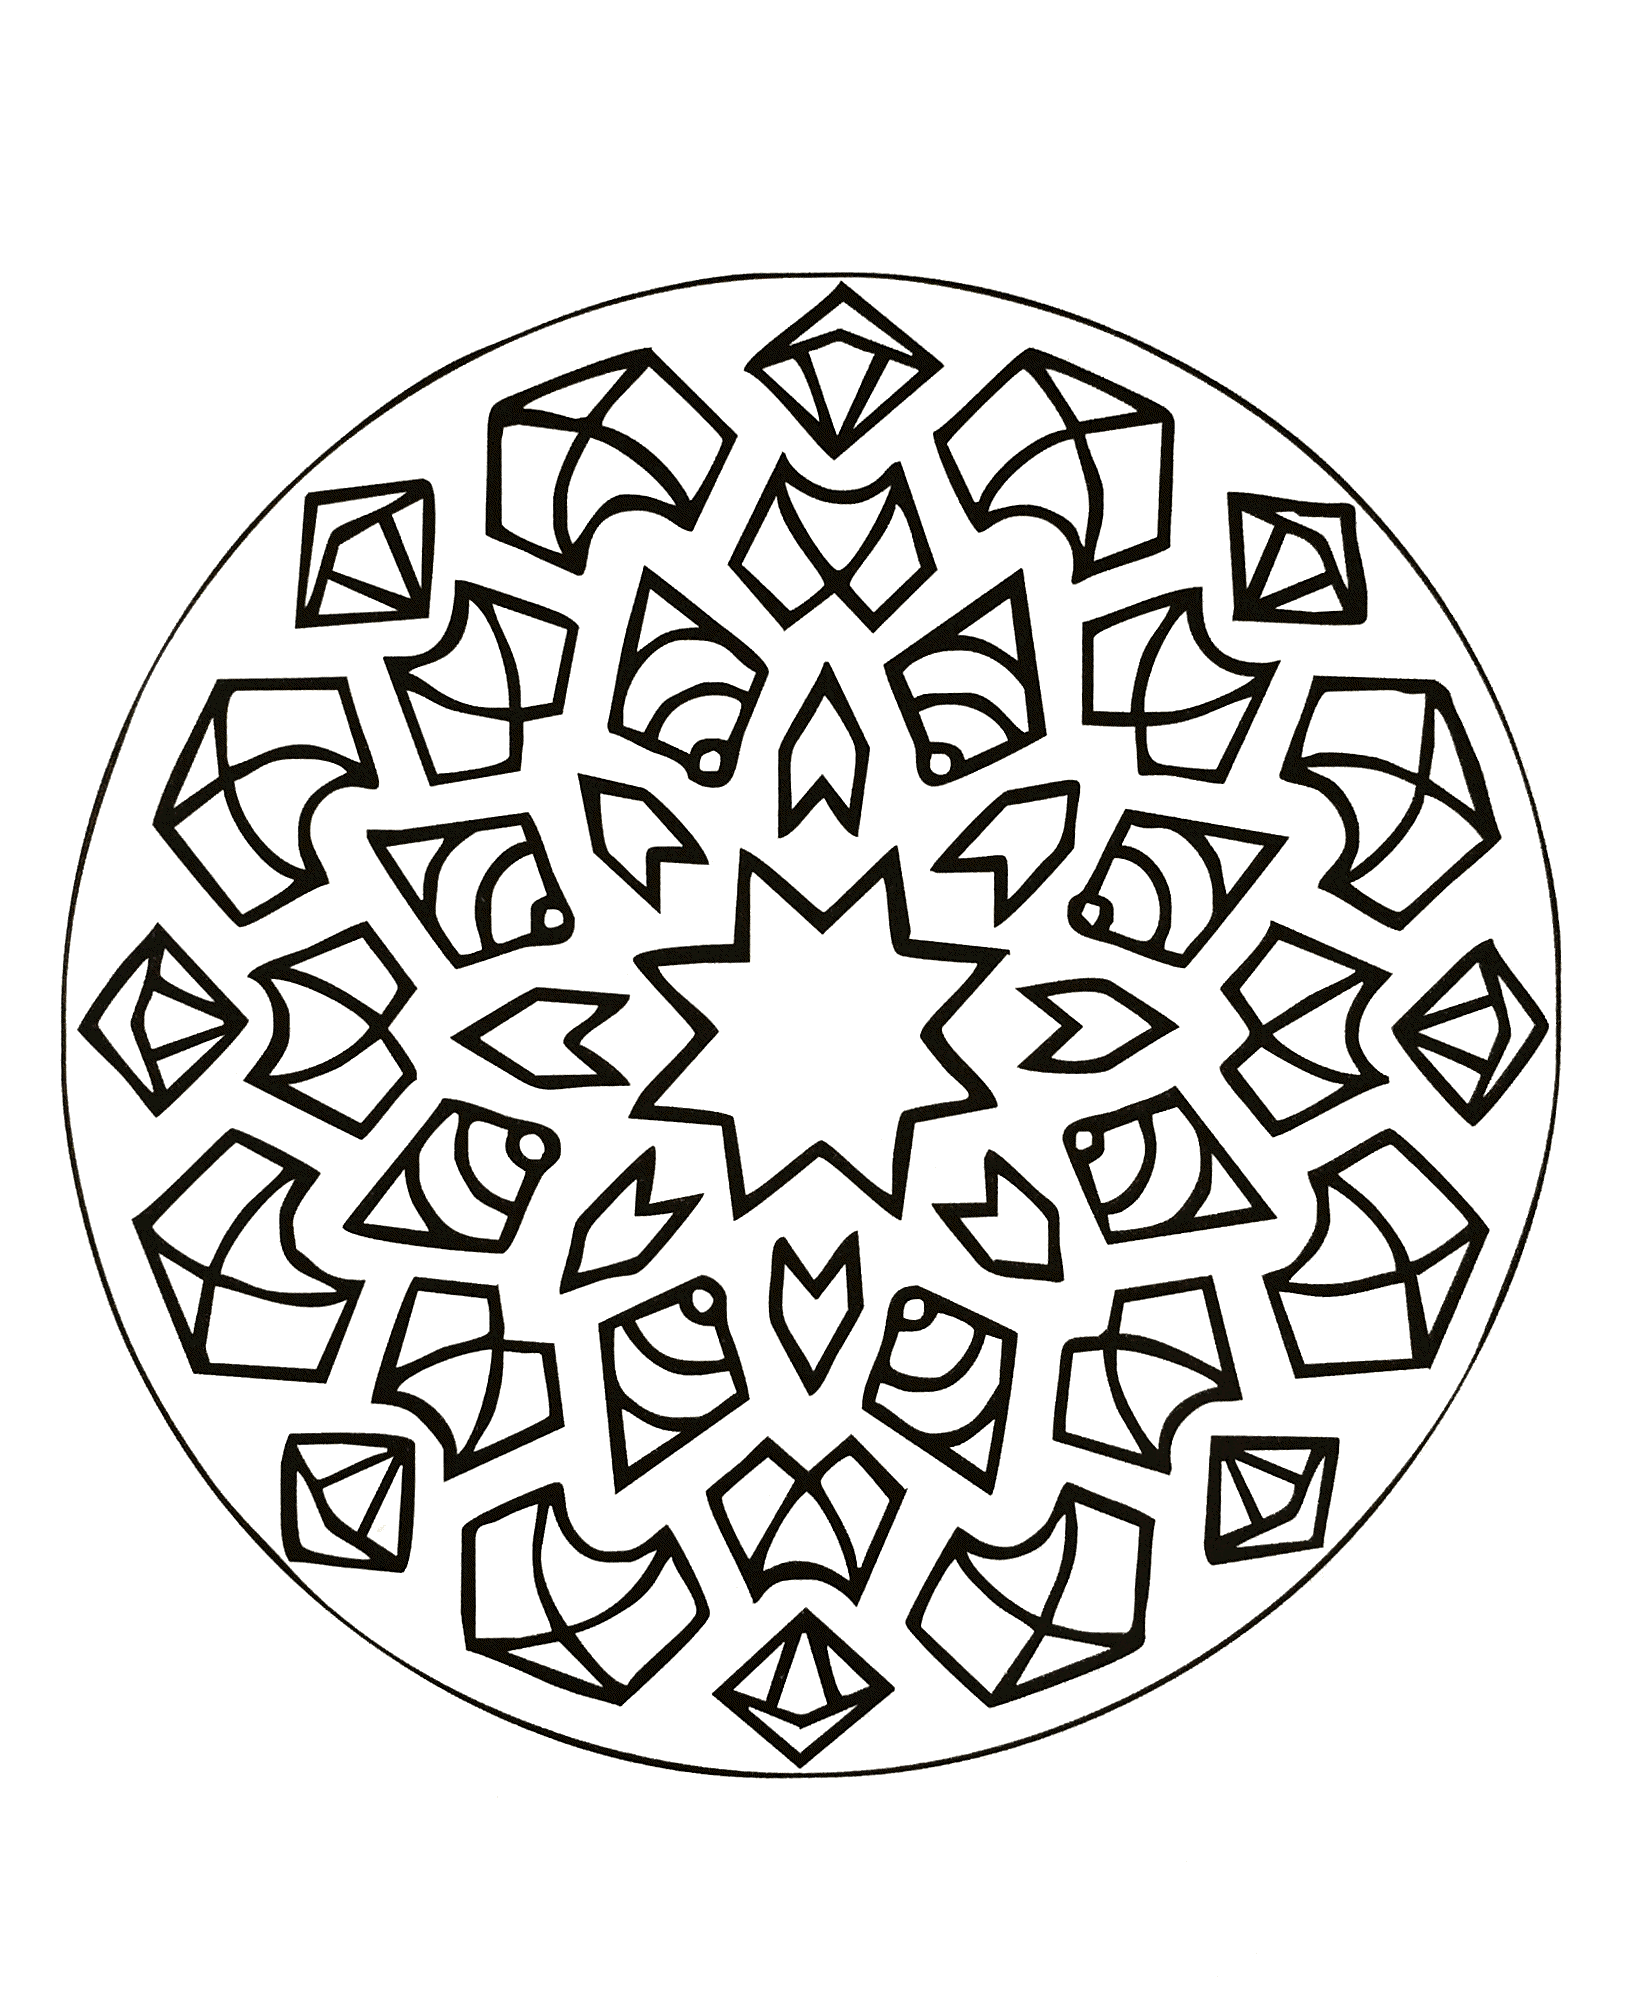 Mandala à colorier symétrique avec une jolie fleur au centre de celui-ci. Assez facile à colorier.